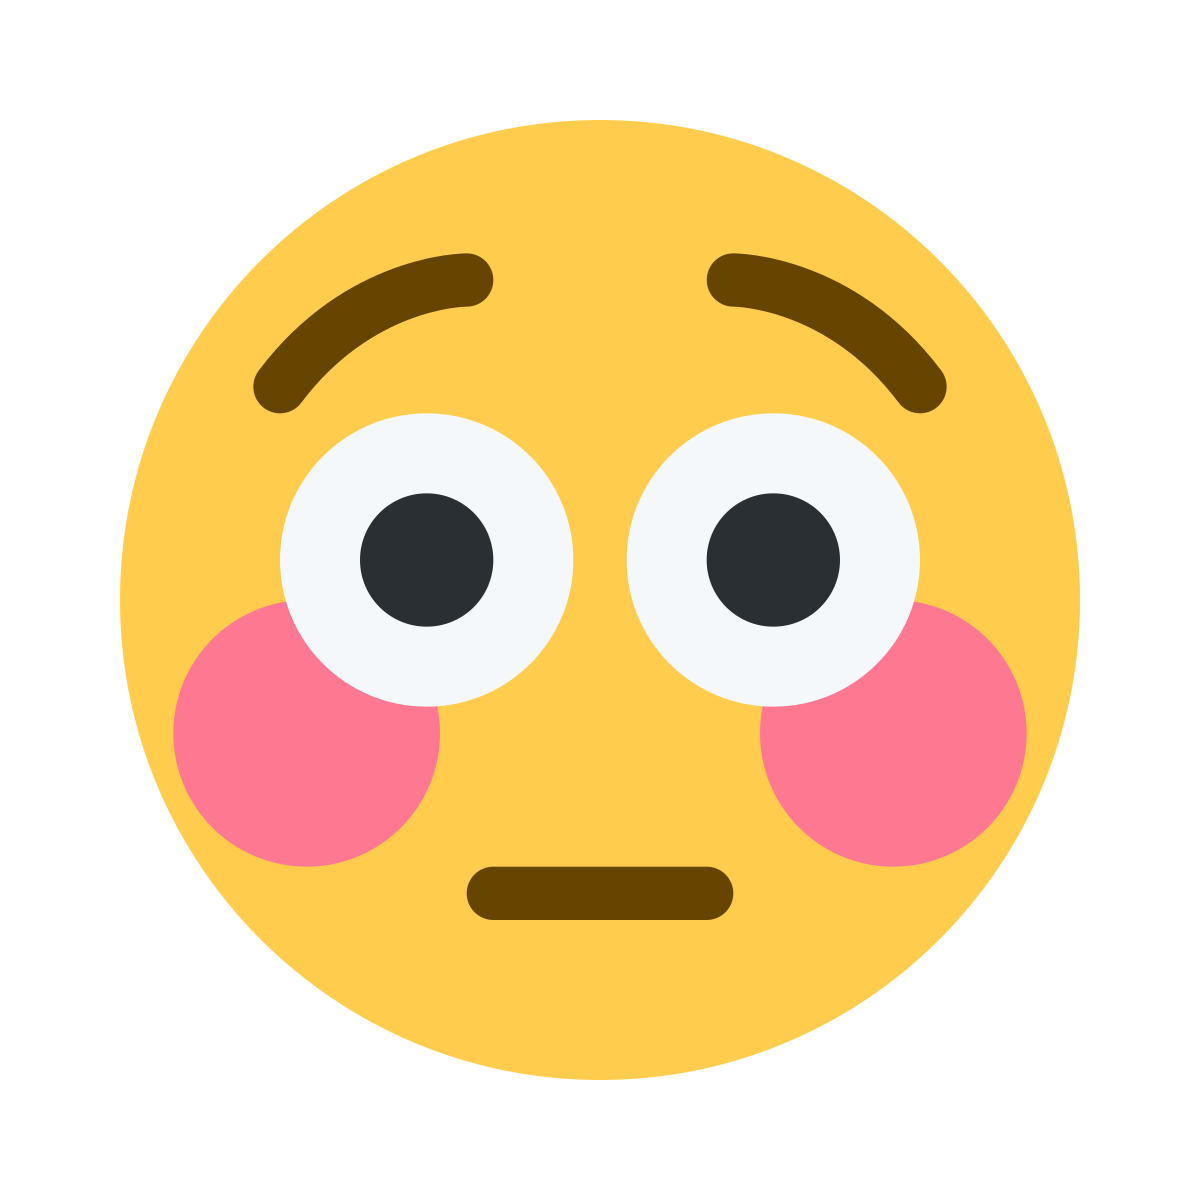 Flushed Face Emoji - What Emoji 類